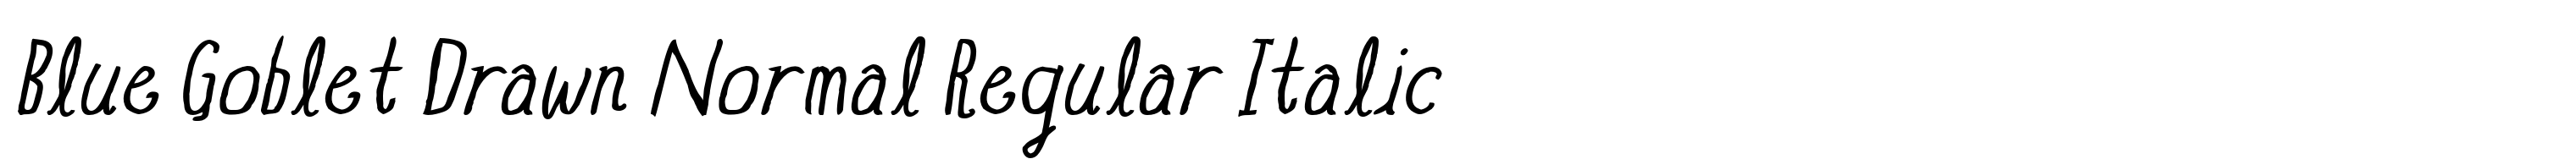 Blue Goblet Drawn Normal Regular Italic